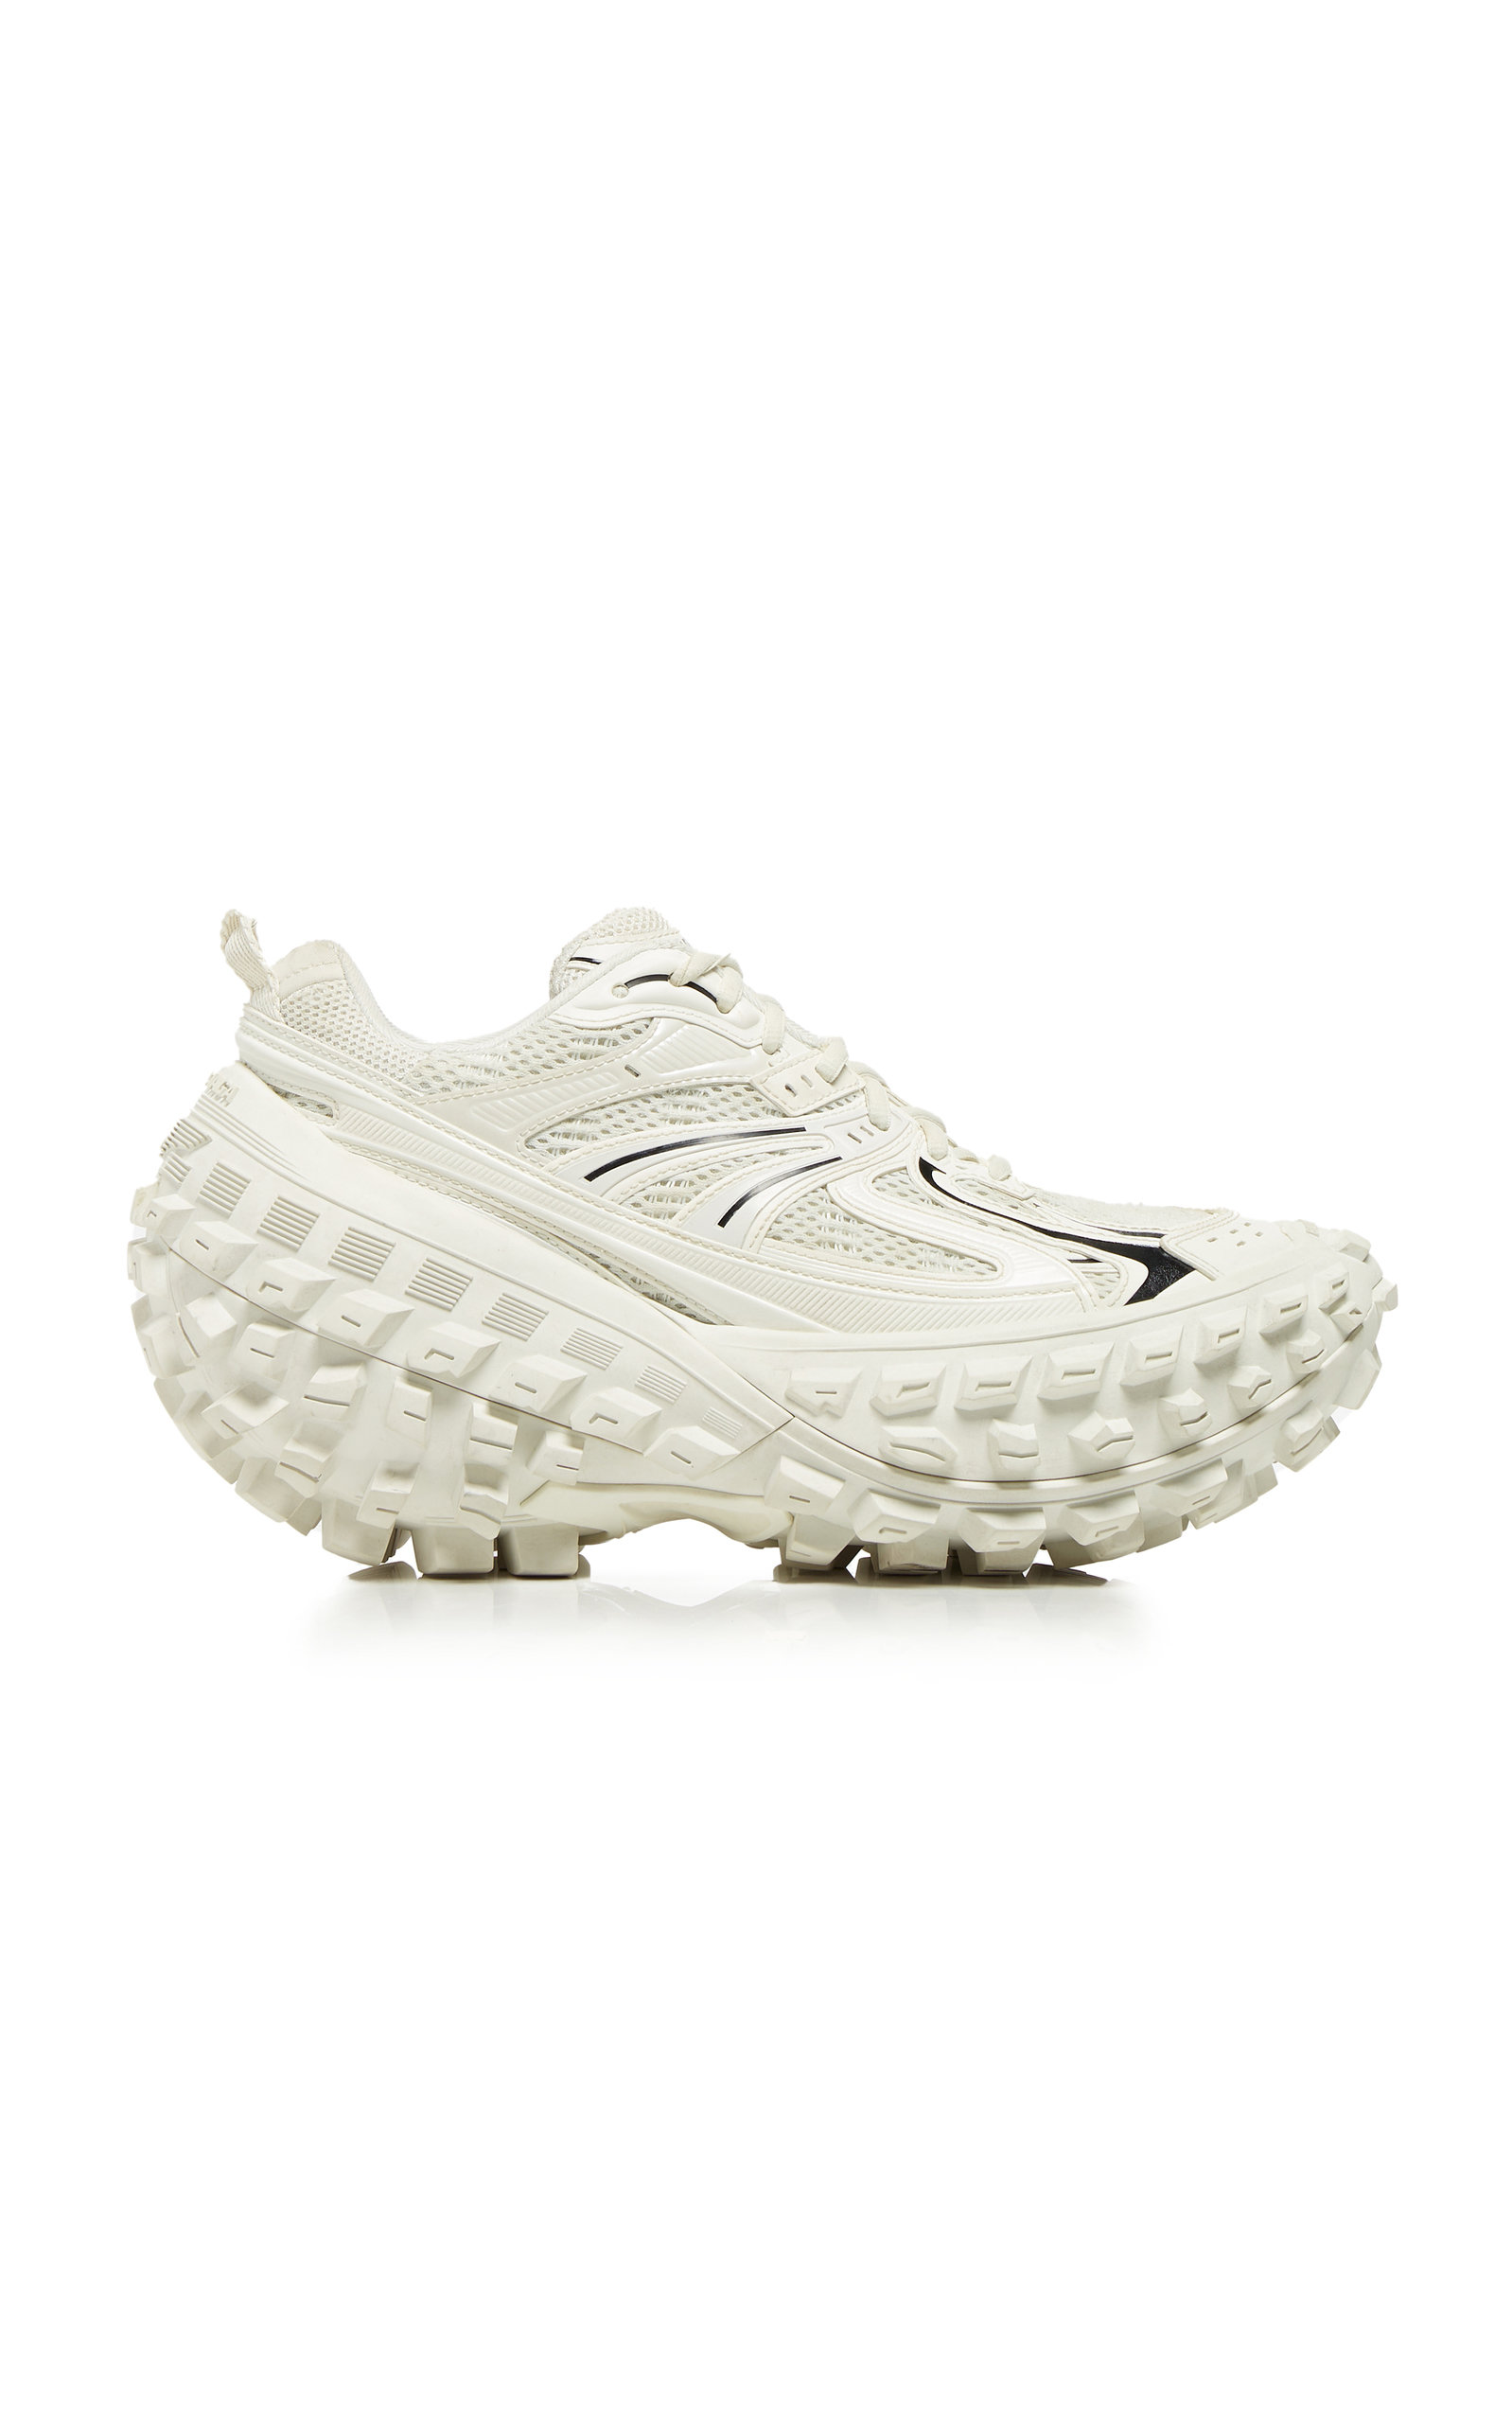 Balenciaga - Women's Defender Mesh and Rubber Sneakers - White - IT 36 - Moda Operandi